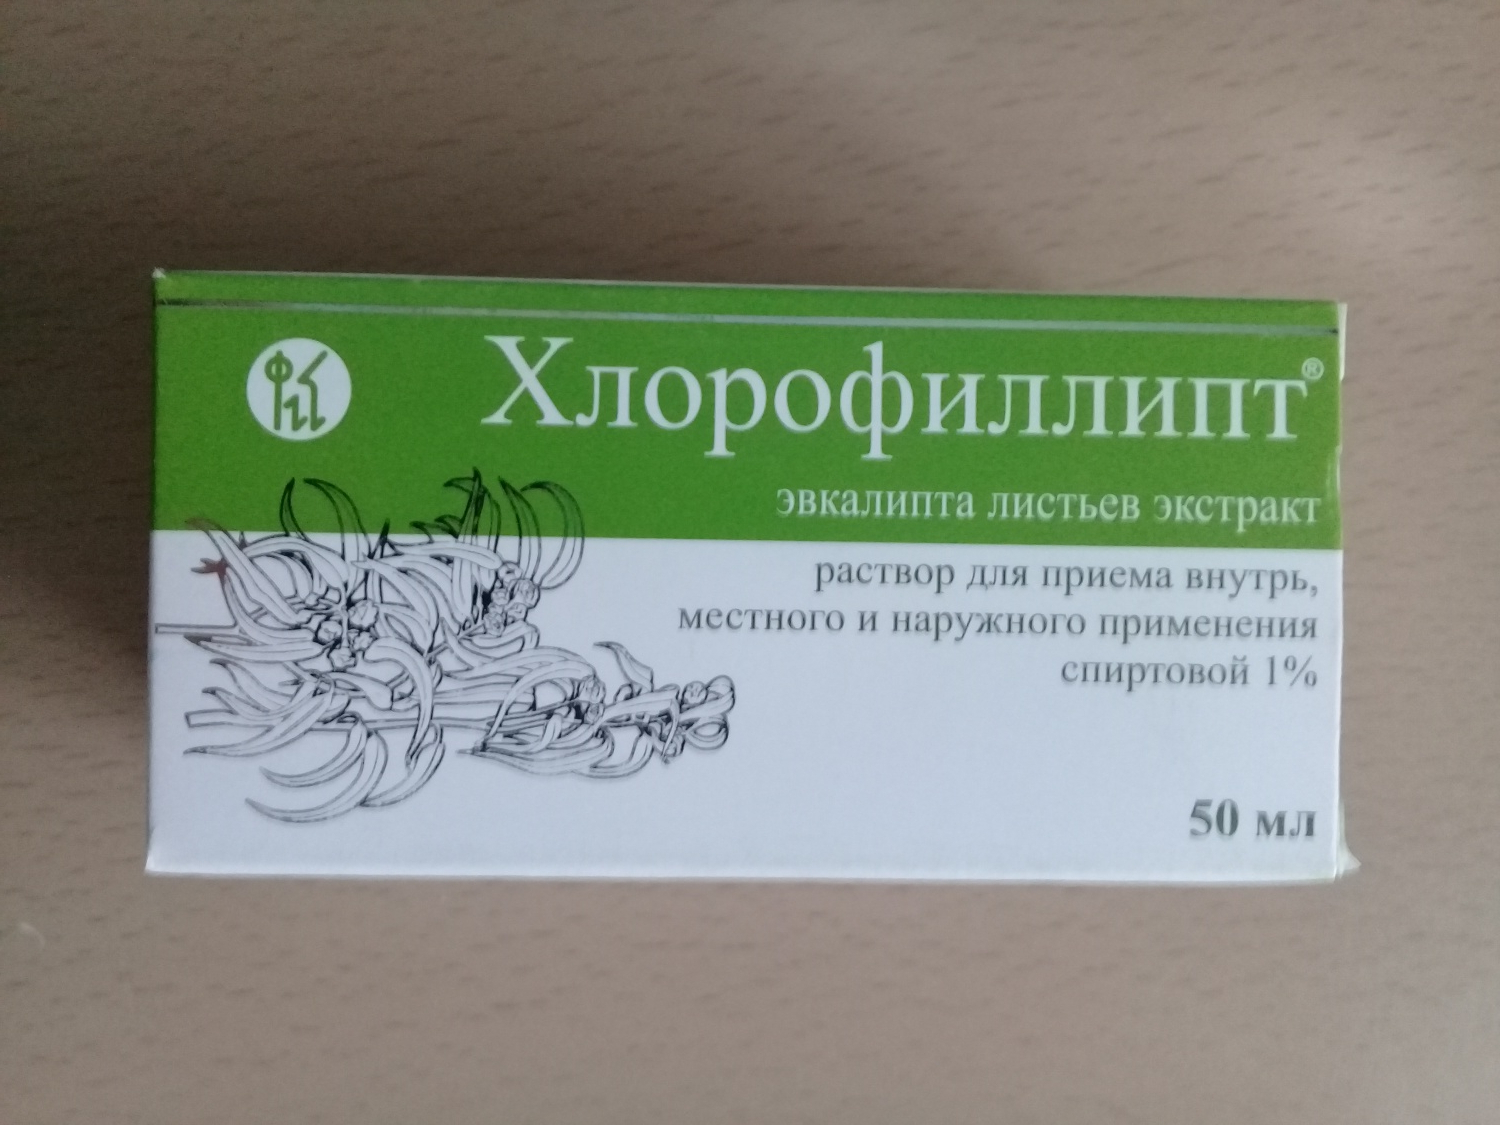 Раствор для приема внутрь Кировской фармацевтической фабрики .